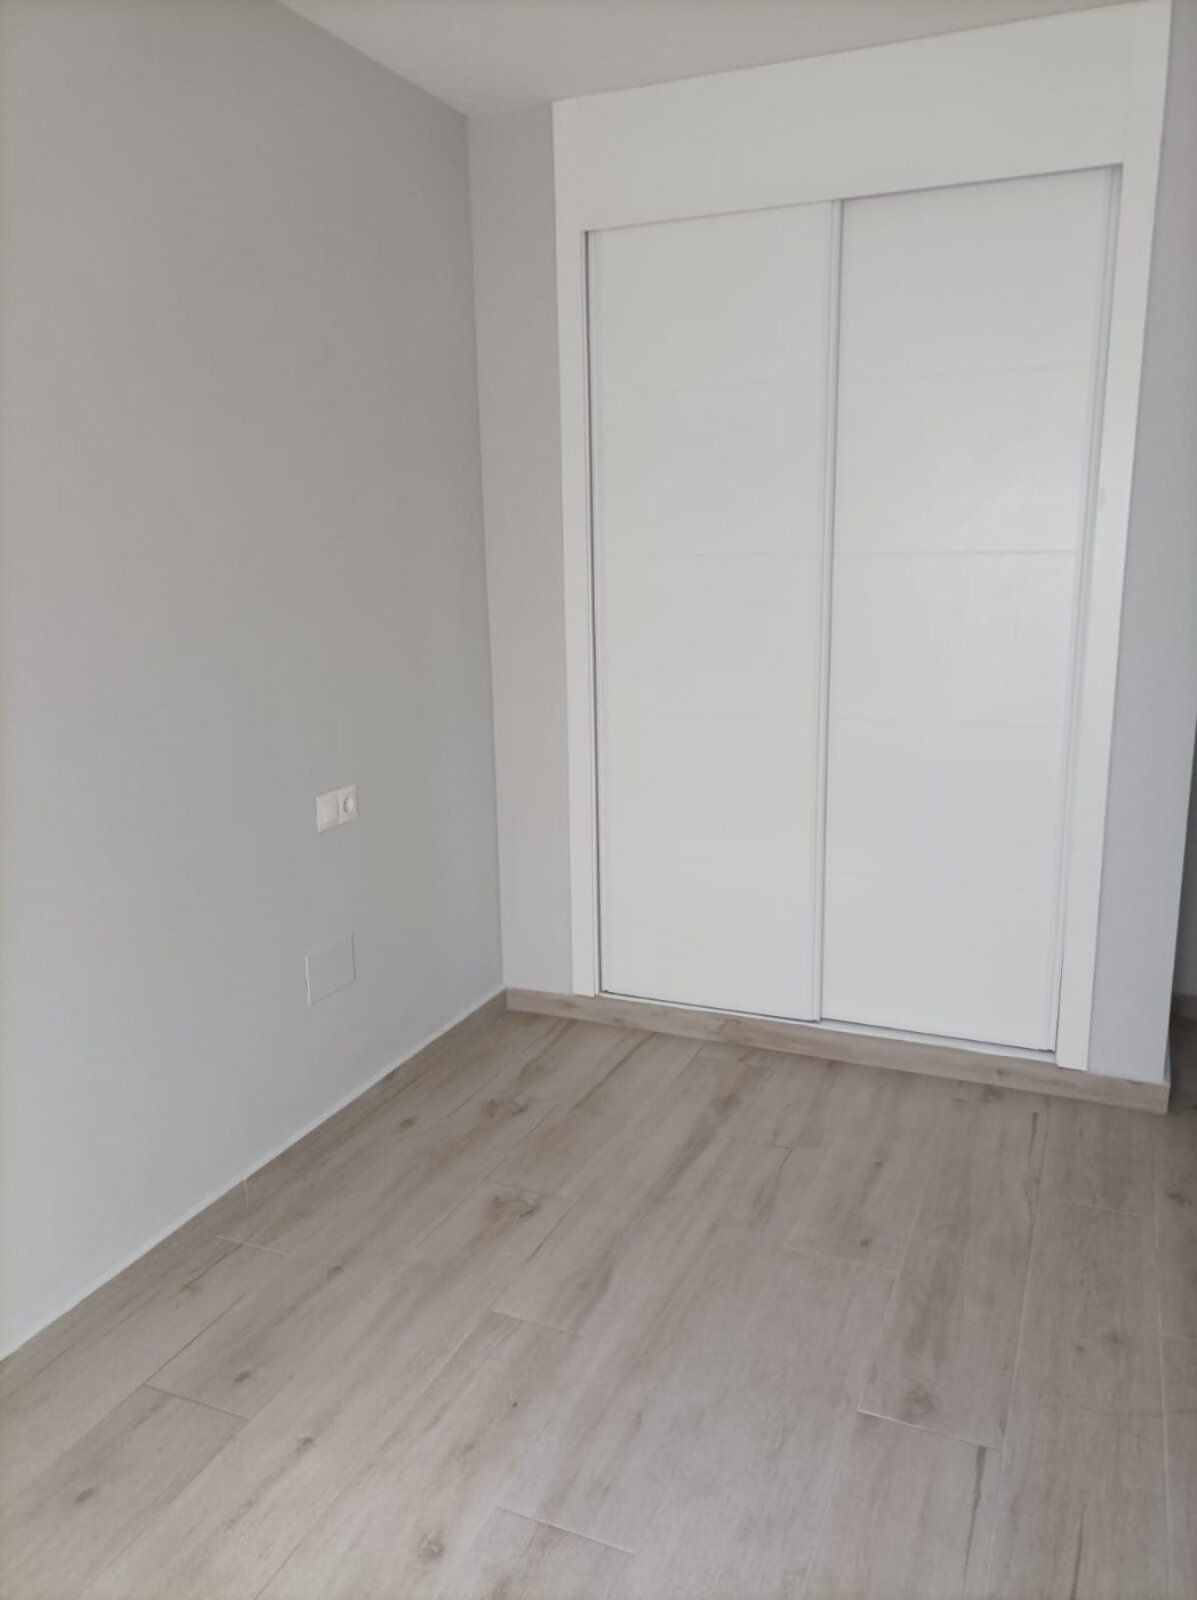 2 bedroom Apartment For Sale in Alhaurín el Grande, Málaga